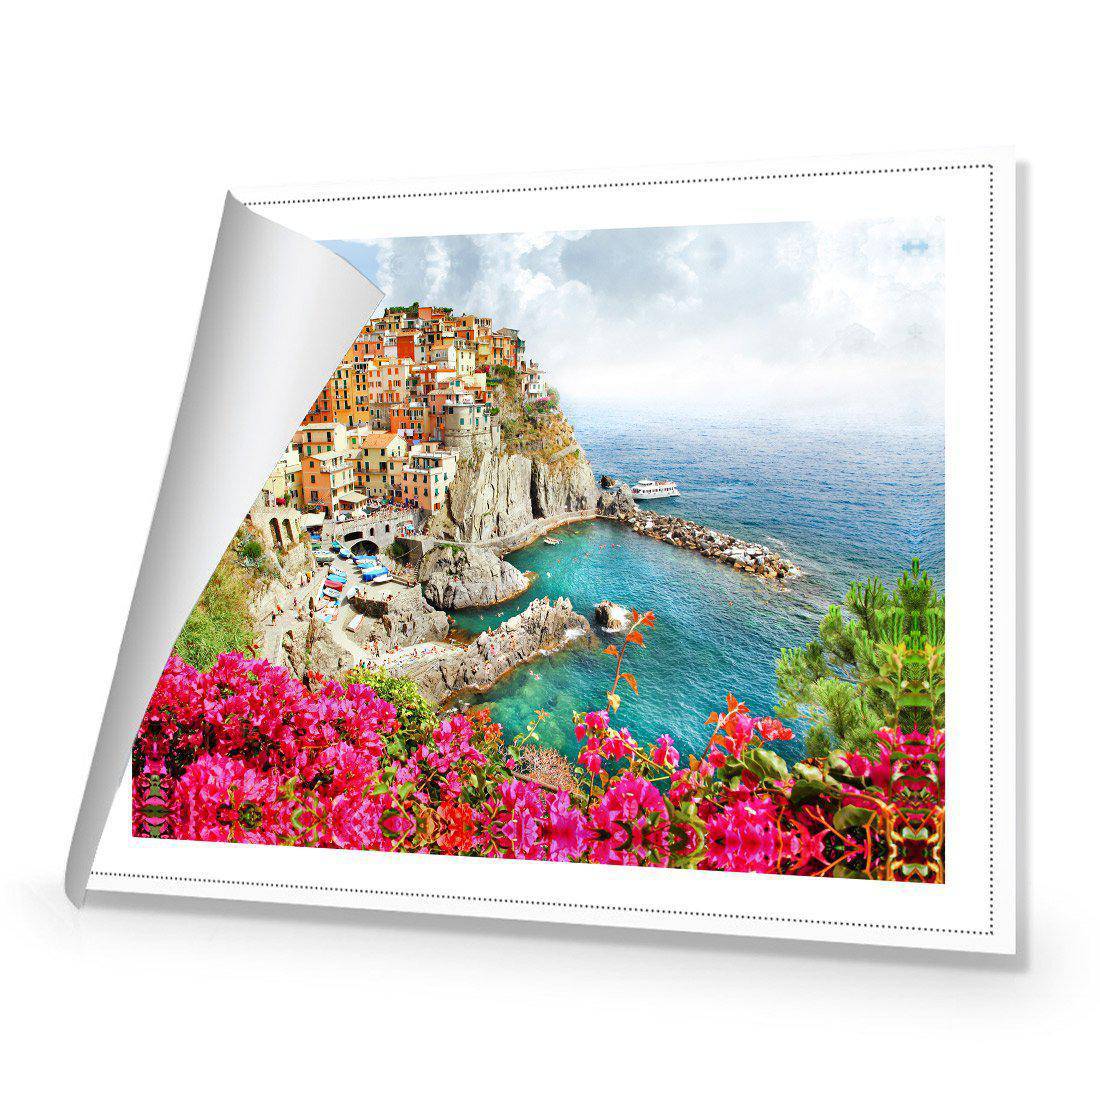 Cinque Terre in Italy Canvas Art-Canvas-Wall Art Designs-45x30cm-Rolled Canvas-Wall Art Designs